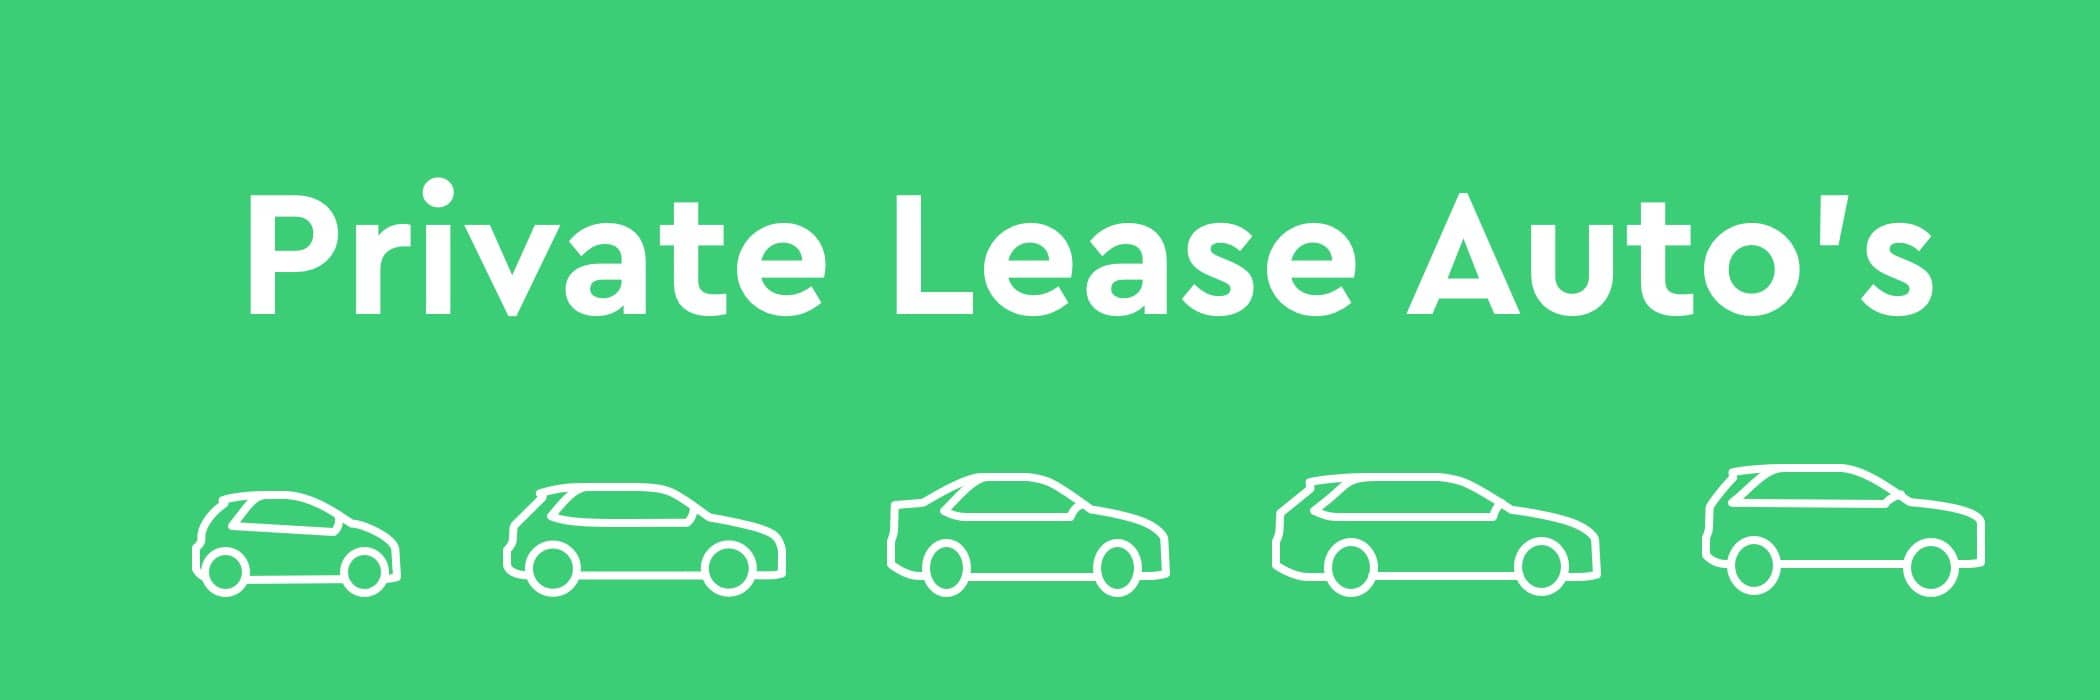 private lease auto